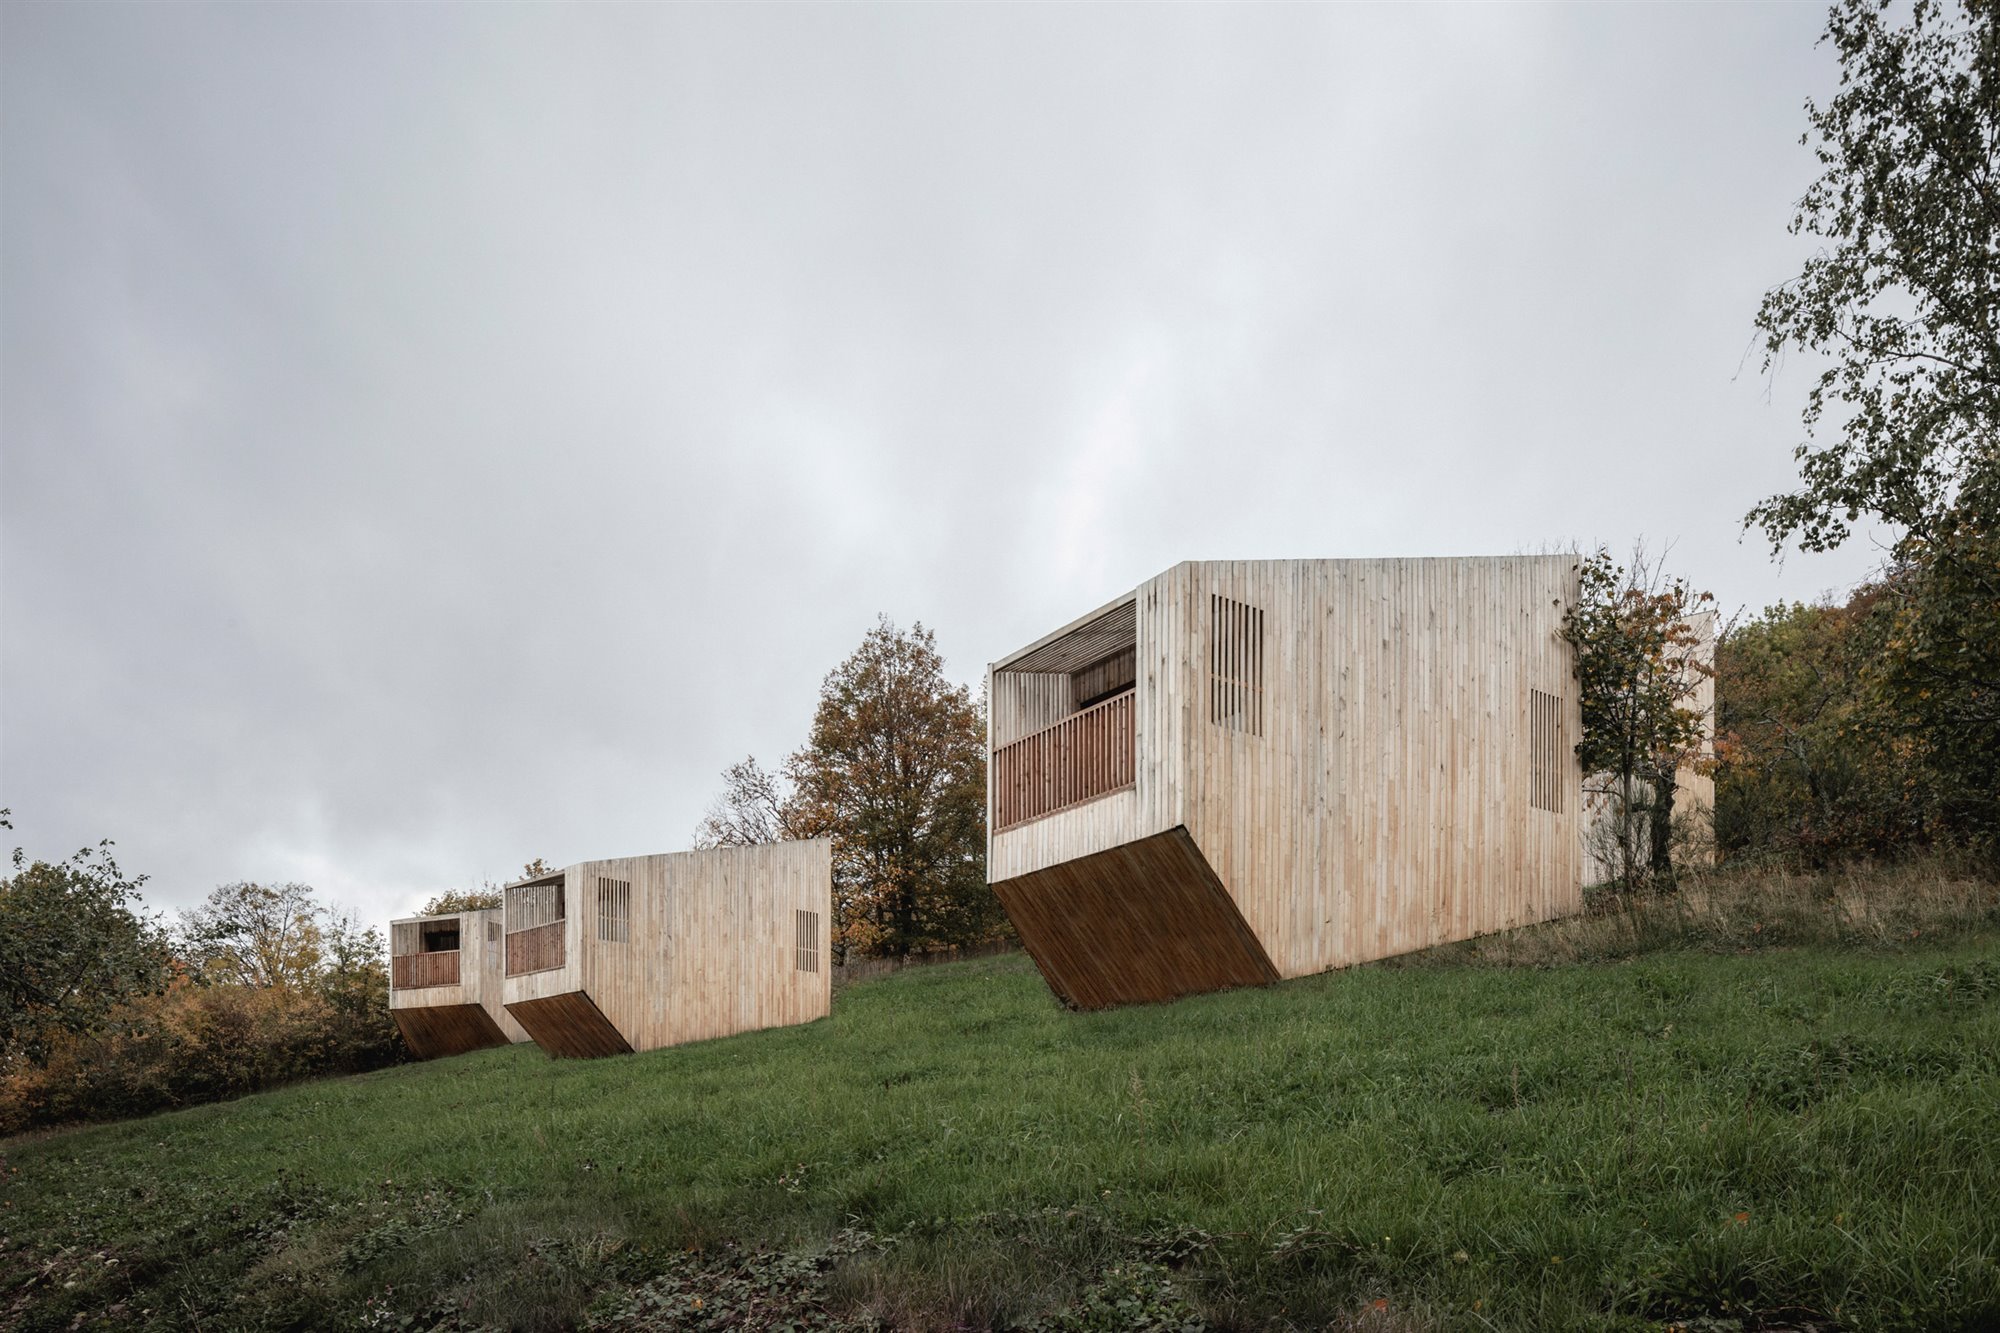 Hotel en forma de cabañas de madera en un bosque de Francia